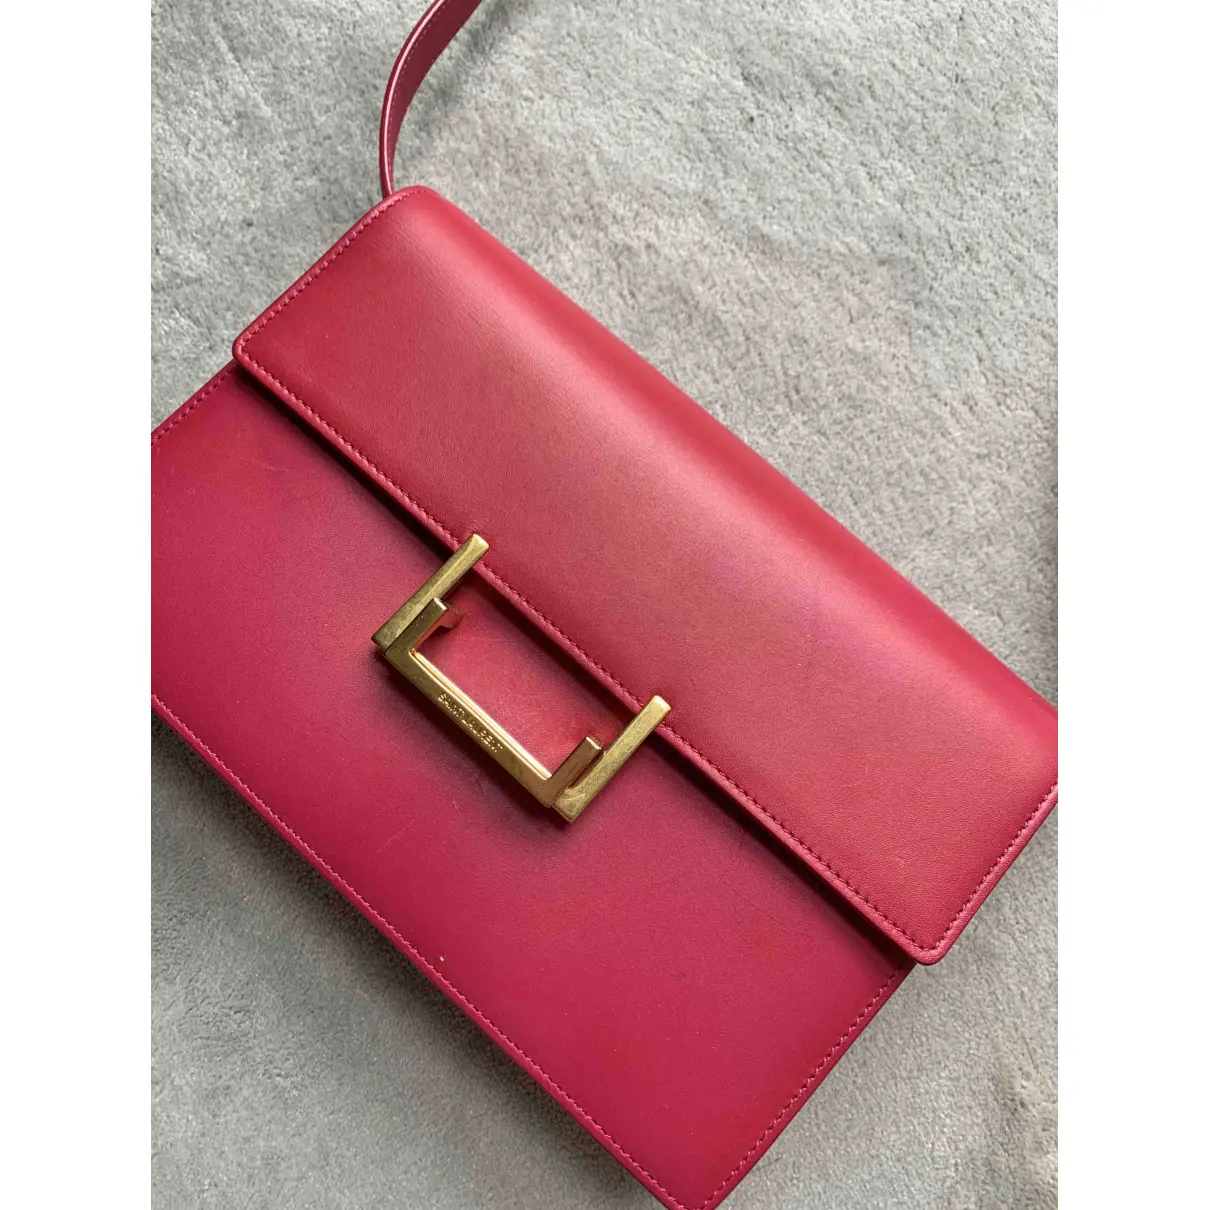 Lulu leather handbag Saint Laurent